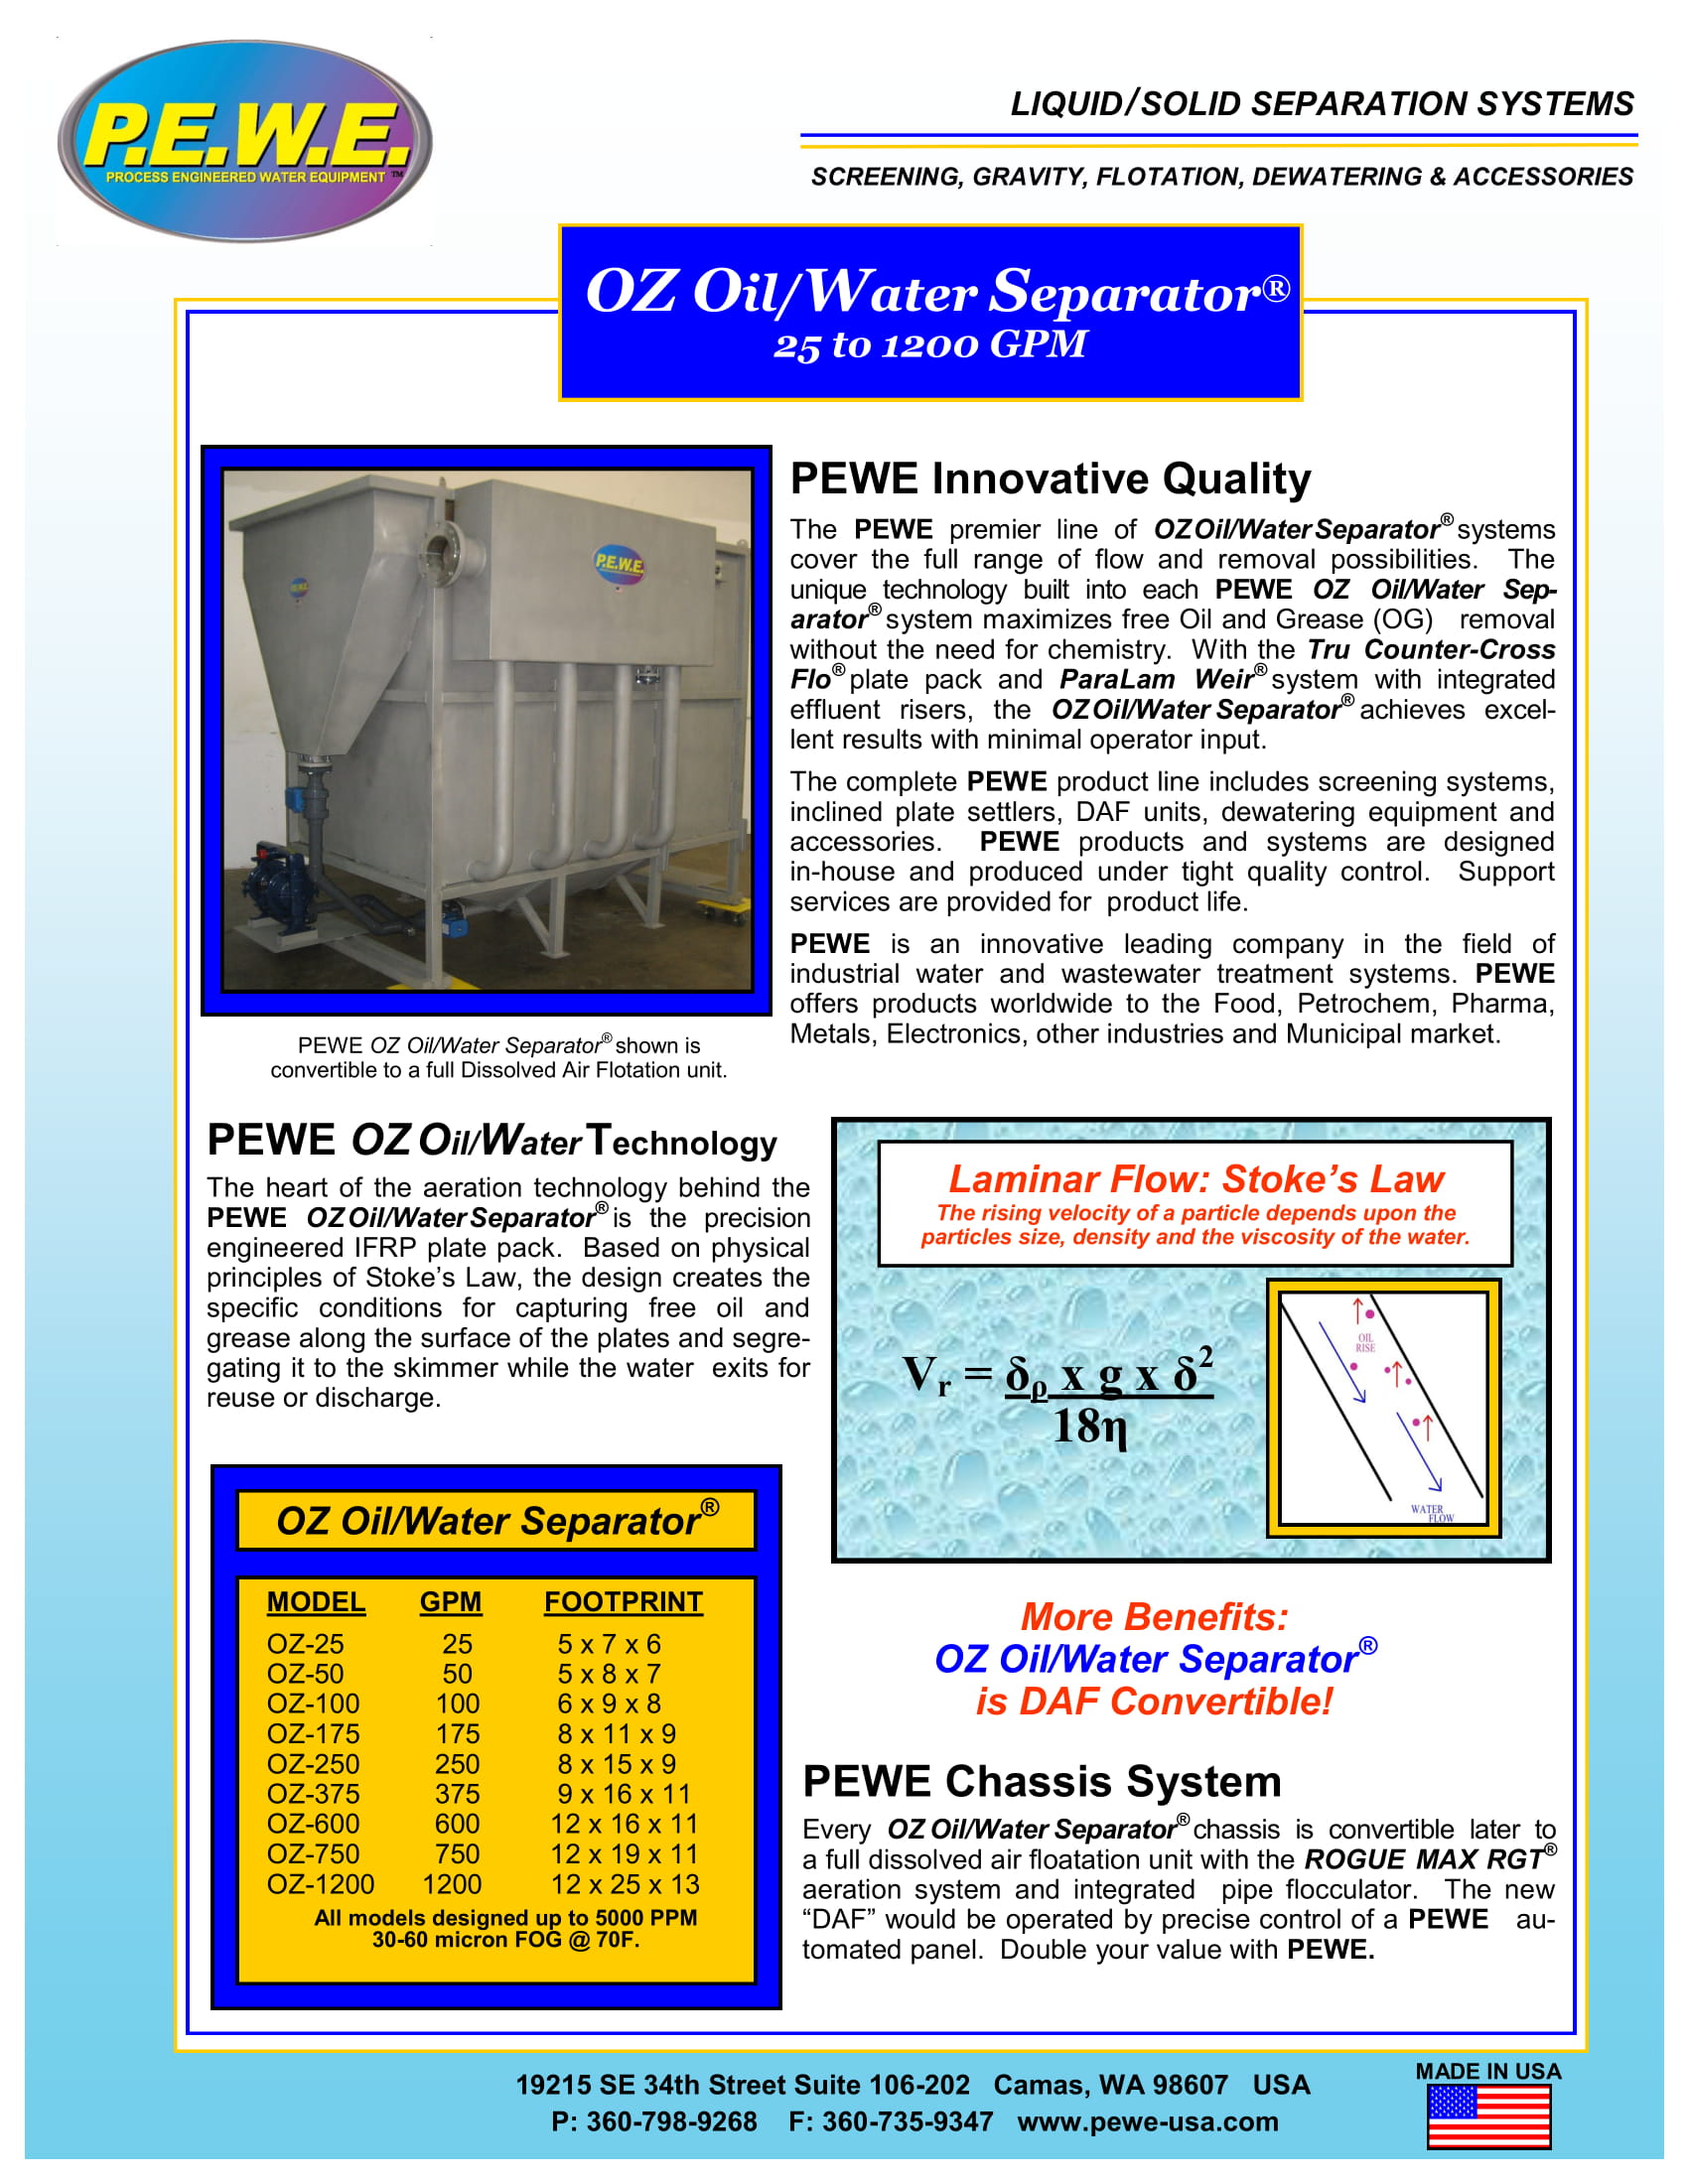 PEWE-OZ-OilWater-Separator-Brochure-051719-1.jpg